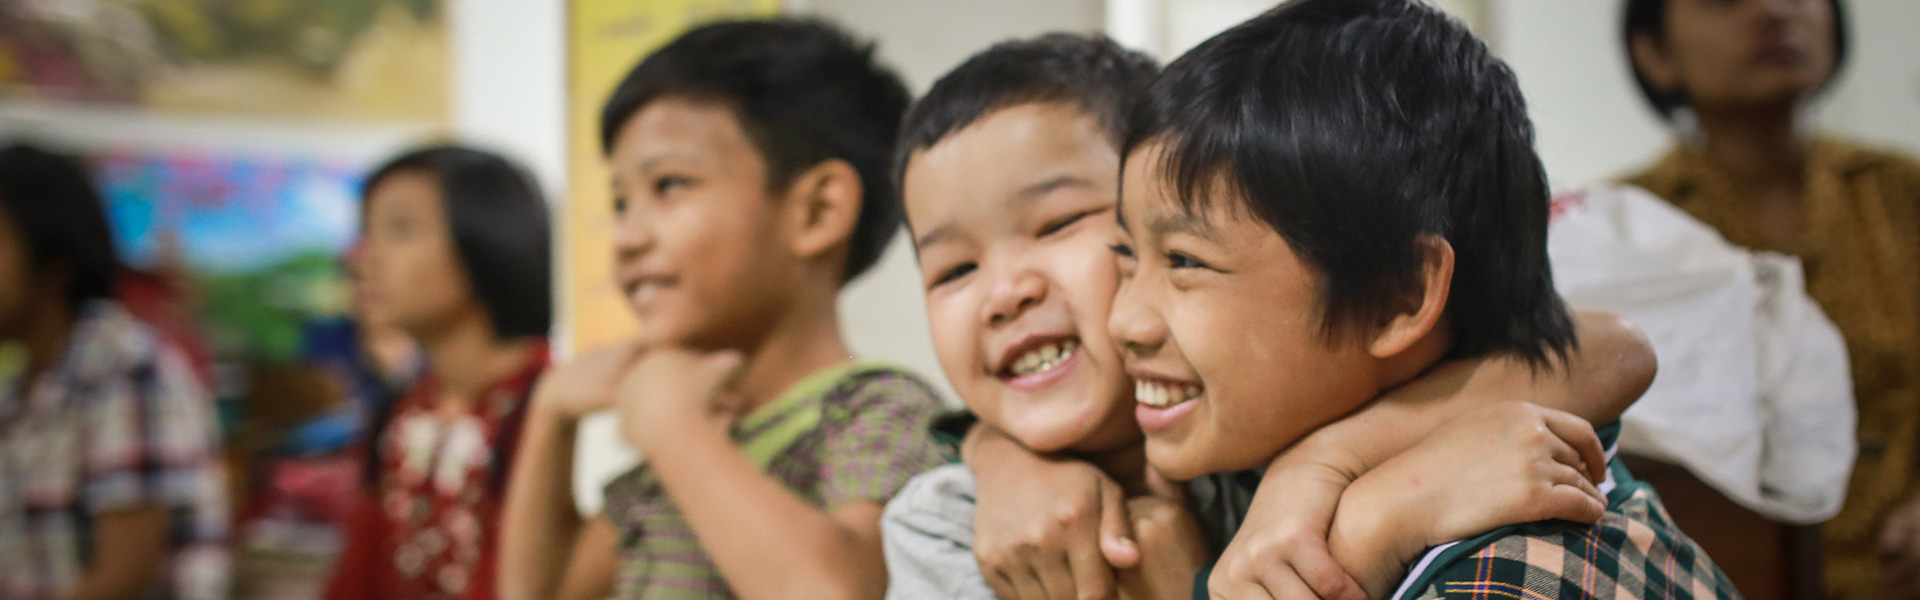 myanmar-kindergarten-children-hugging